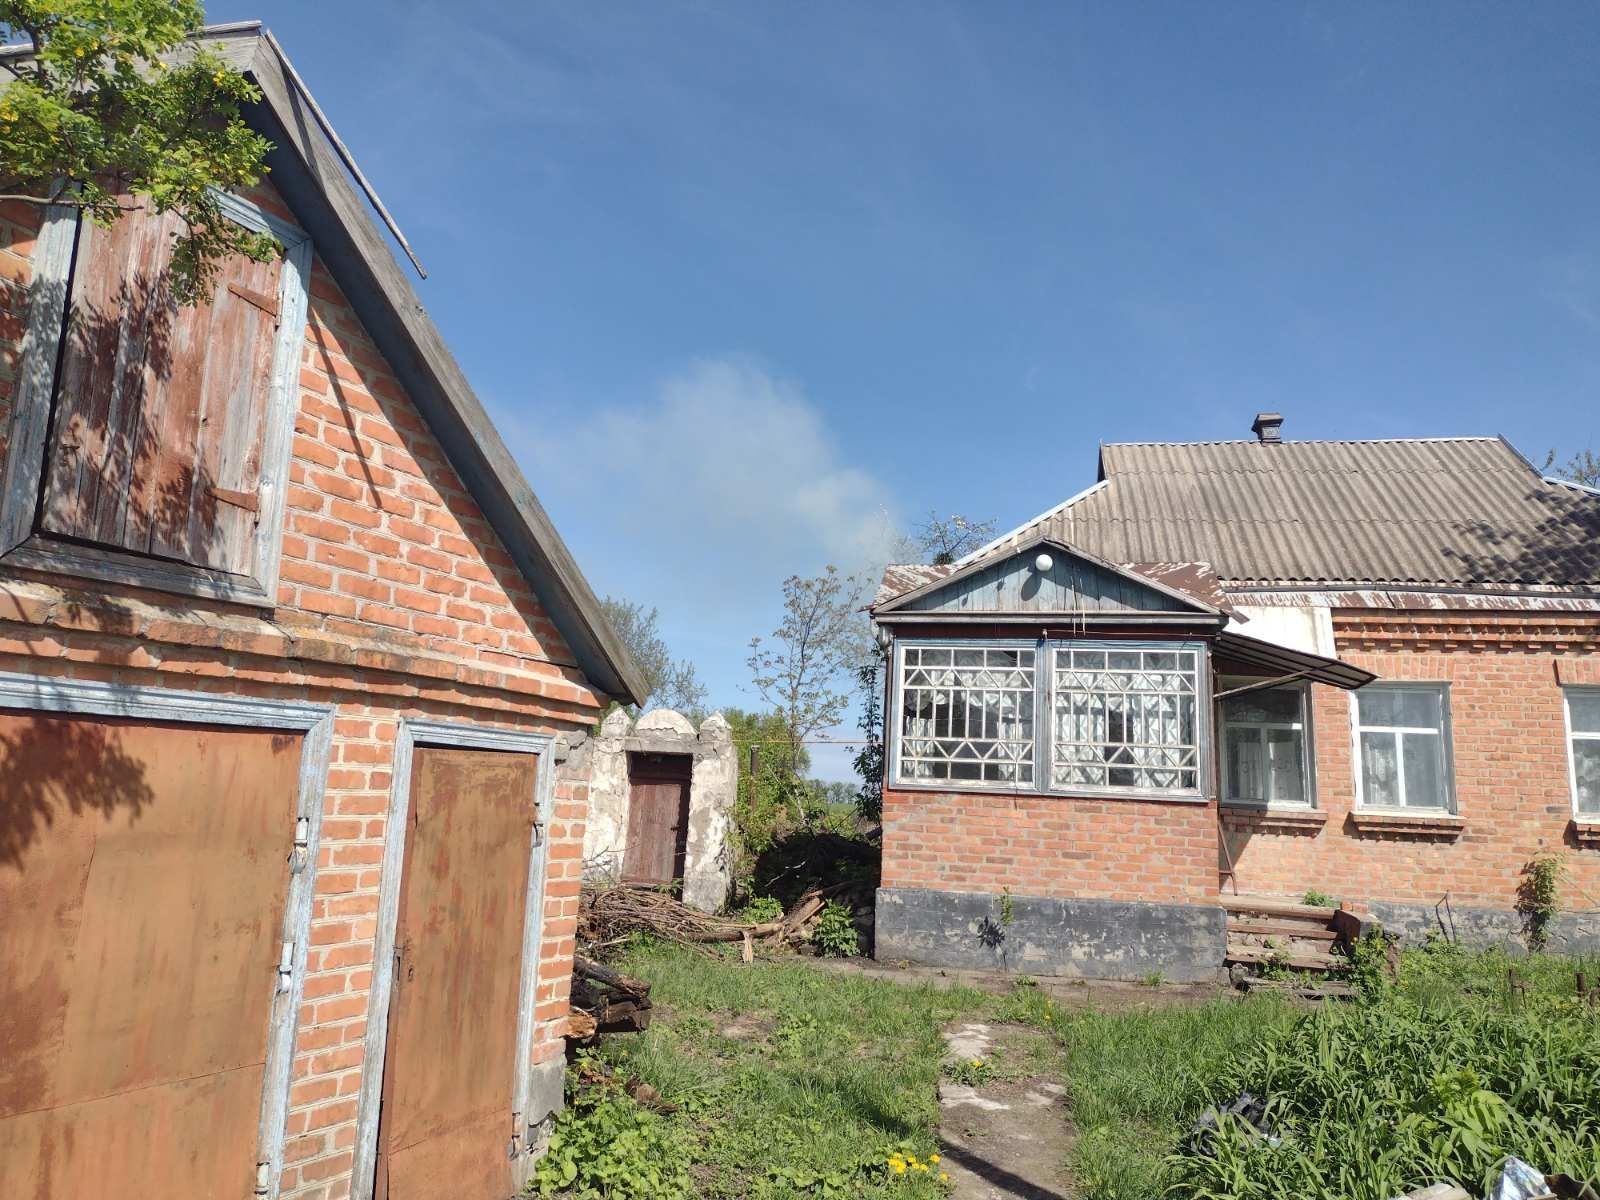 Продаж будинку в селі Валява Черкаської області